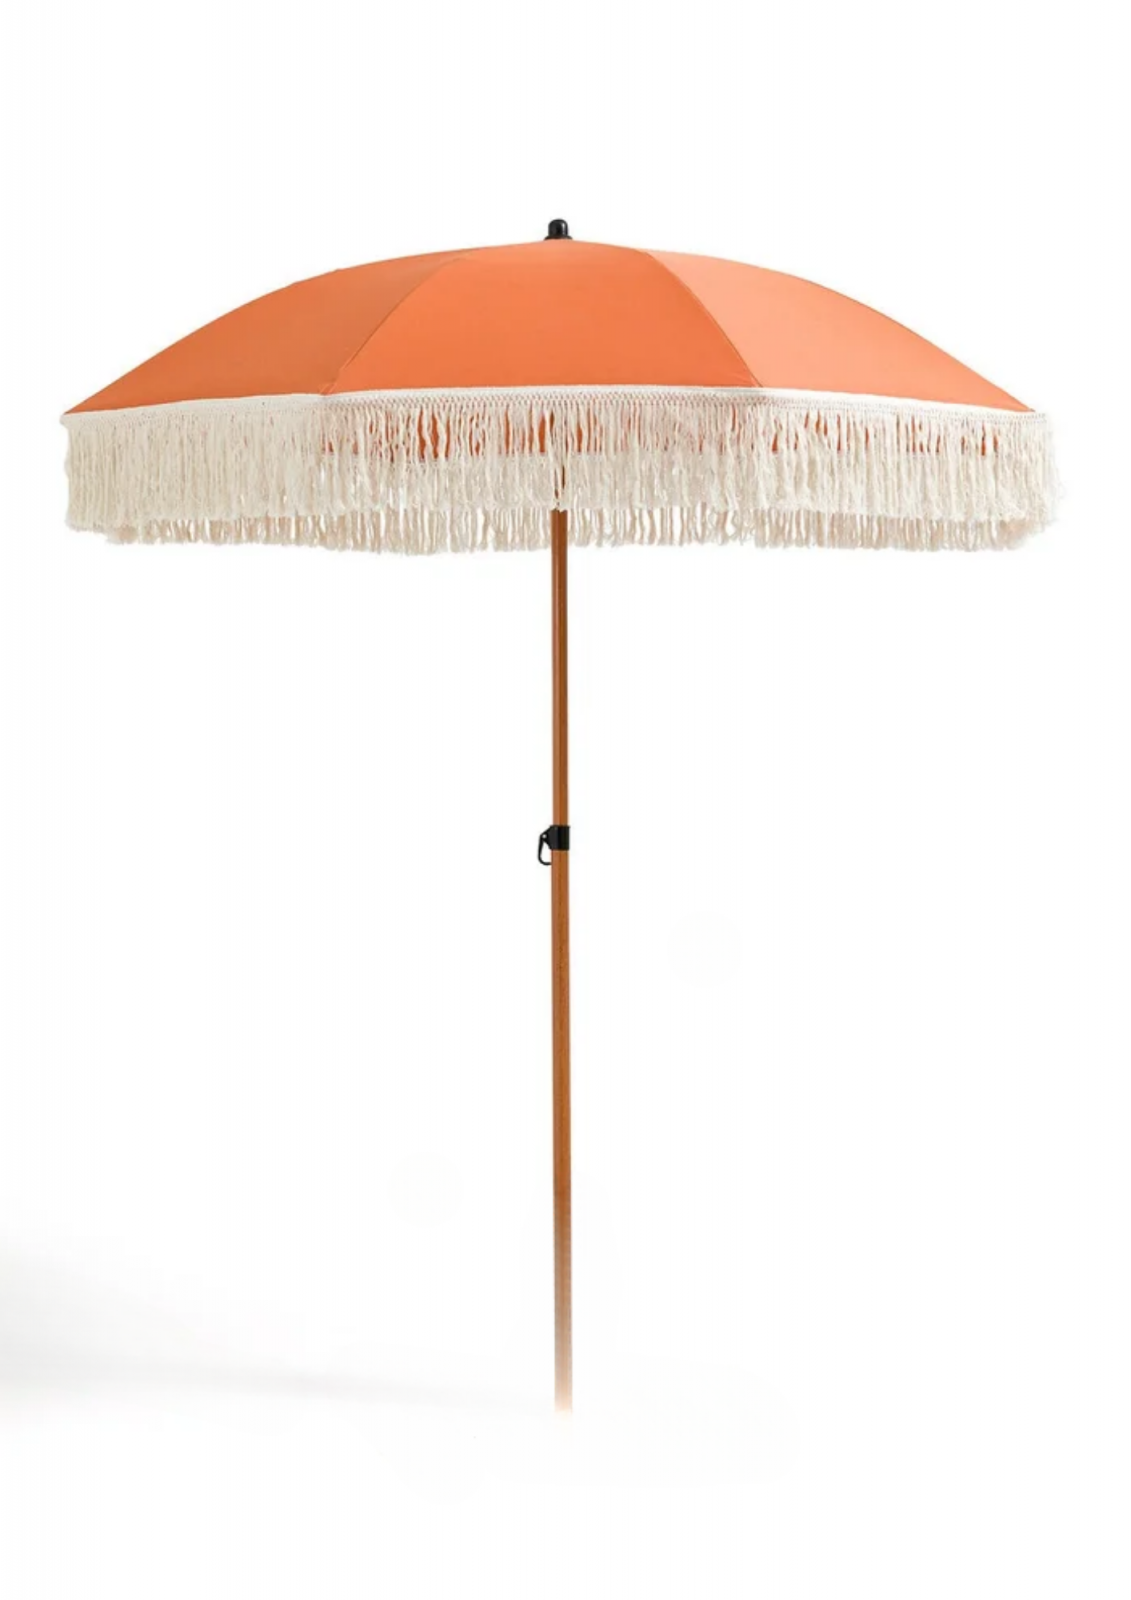 Orange fringed parasol rental